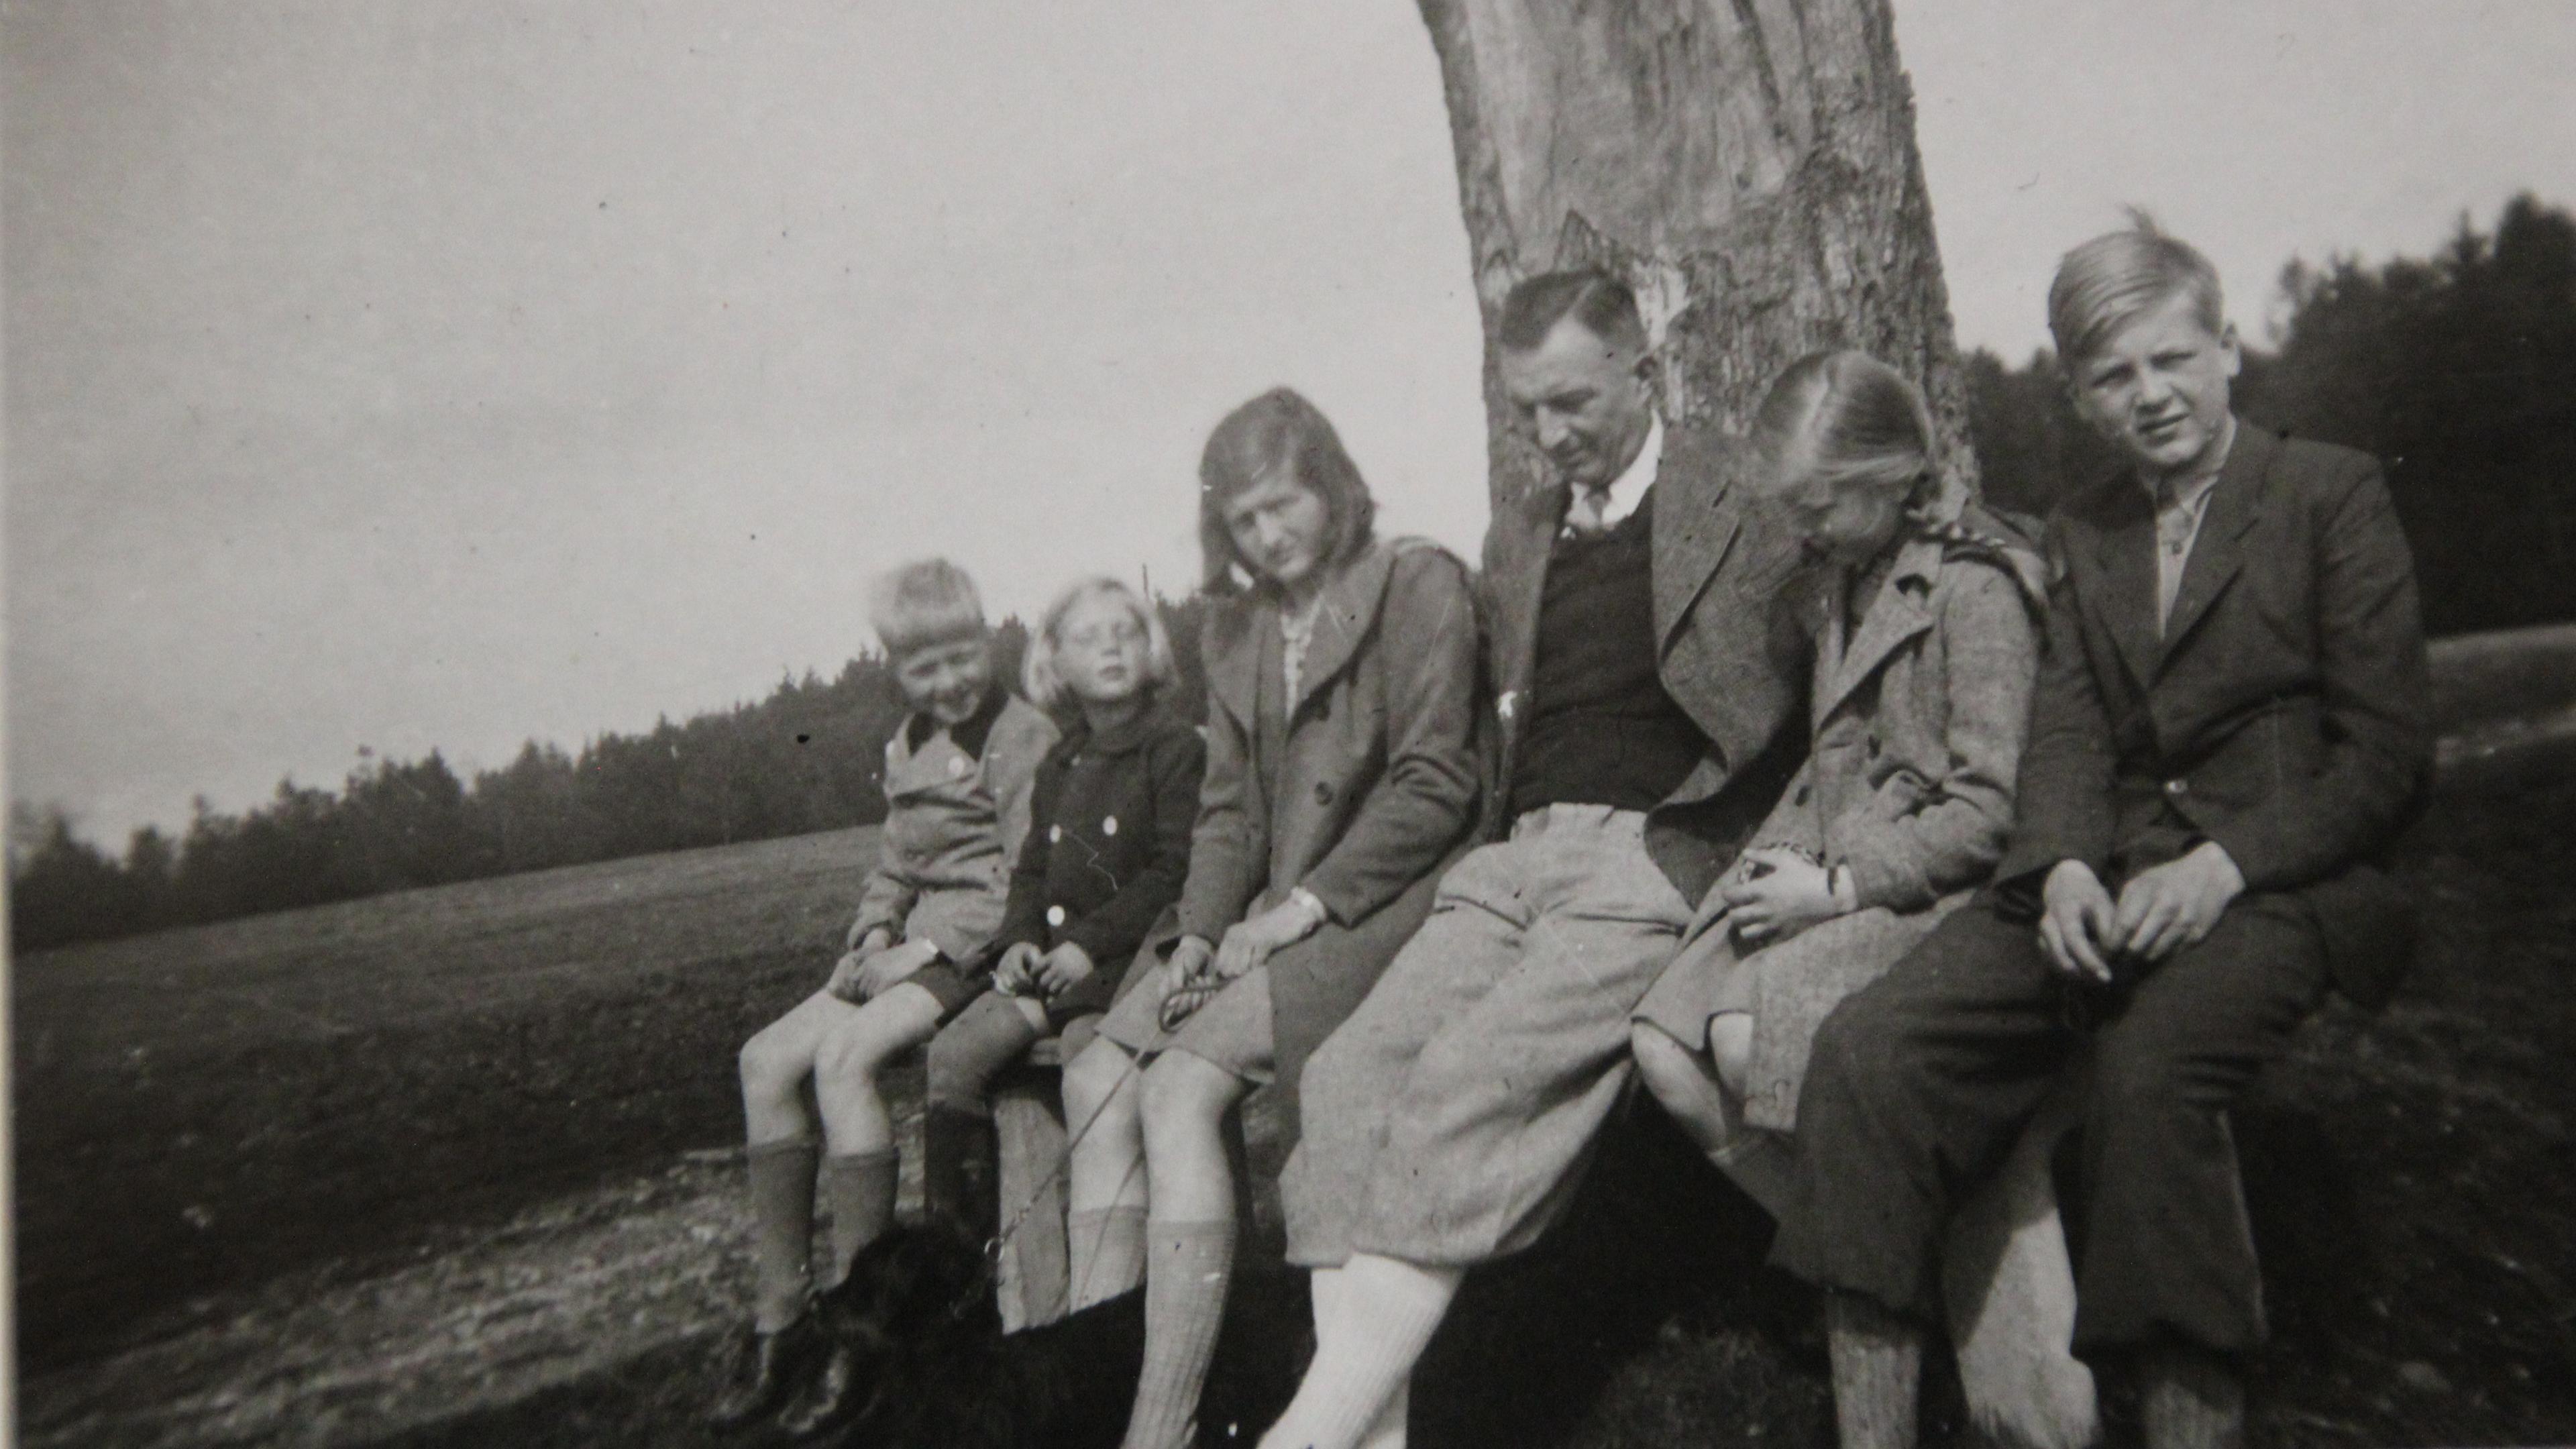  Schwarz-Weiß-Foto: Caesar von Hofacker sitzt mit seinen fünf Kindern vor einem Baum.